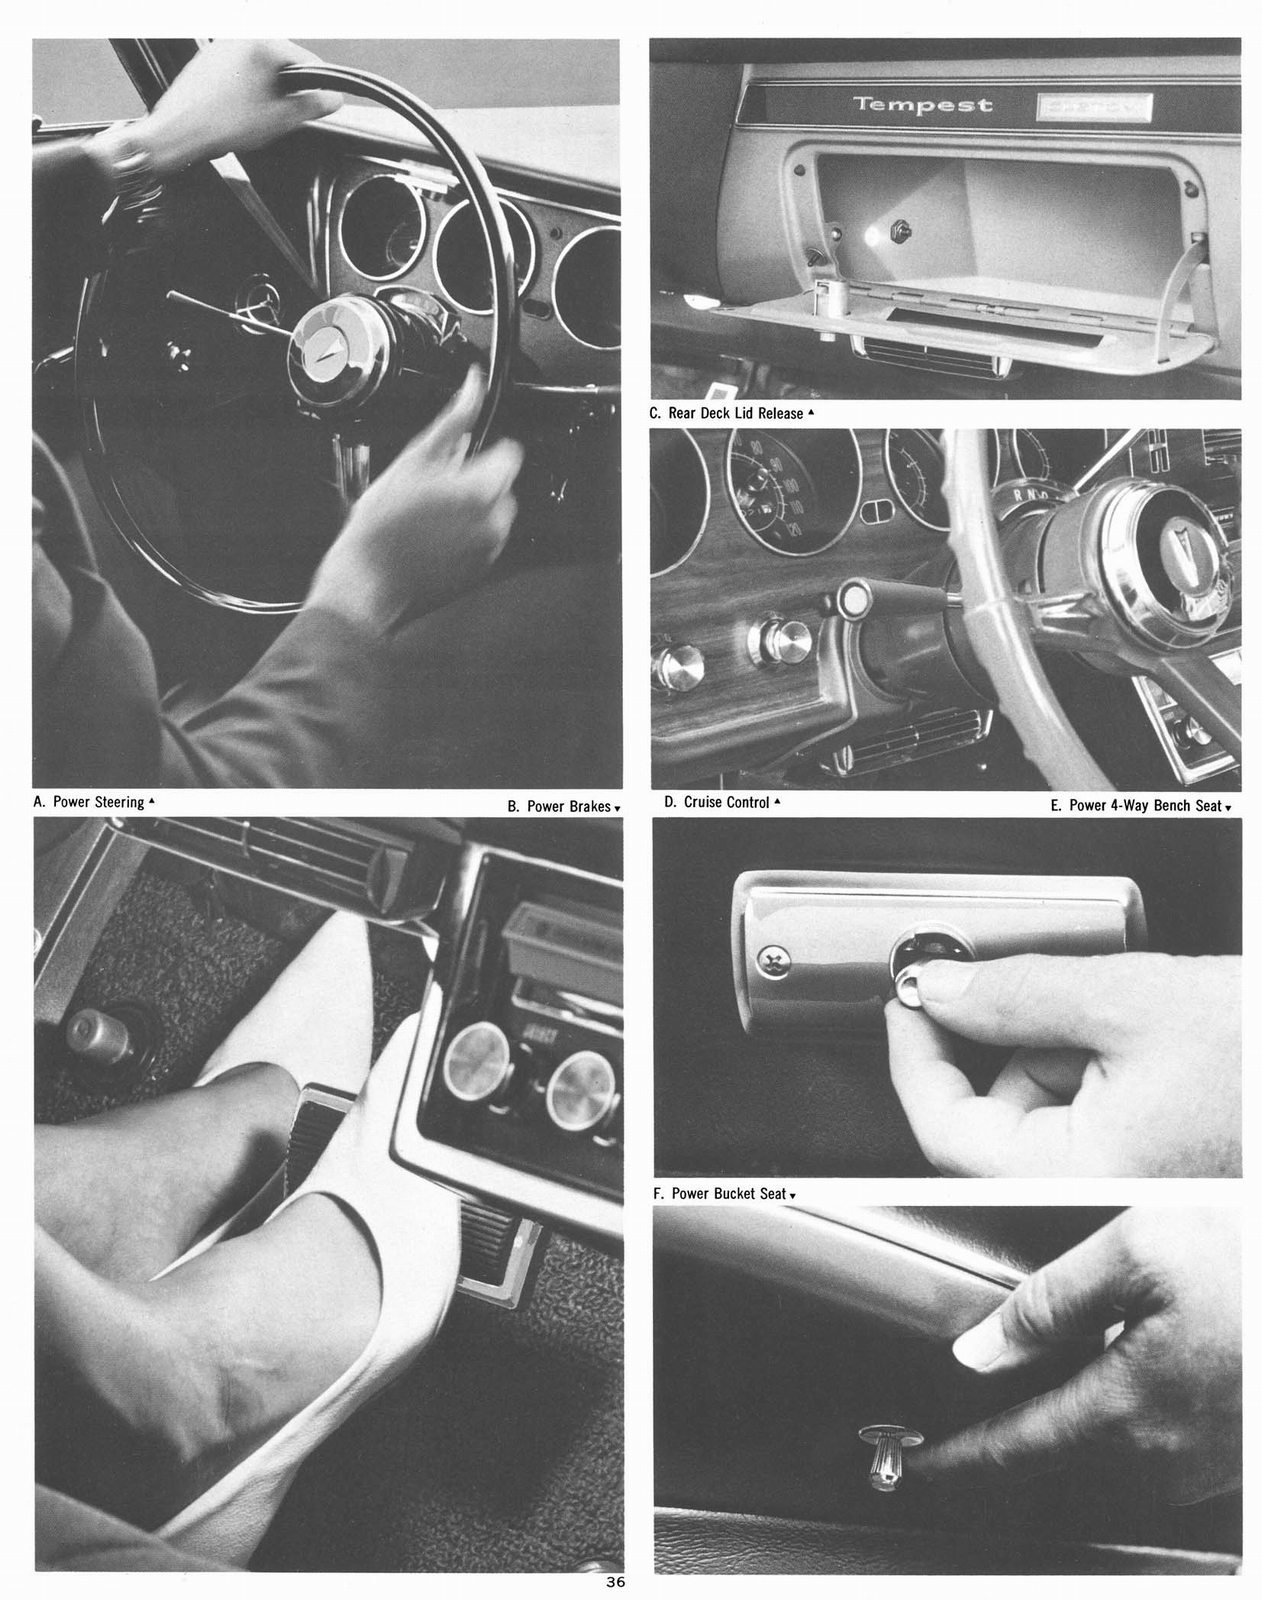 n_1967 Pontiac Accessories-36.jpg